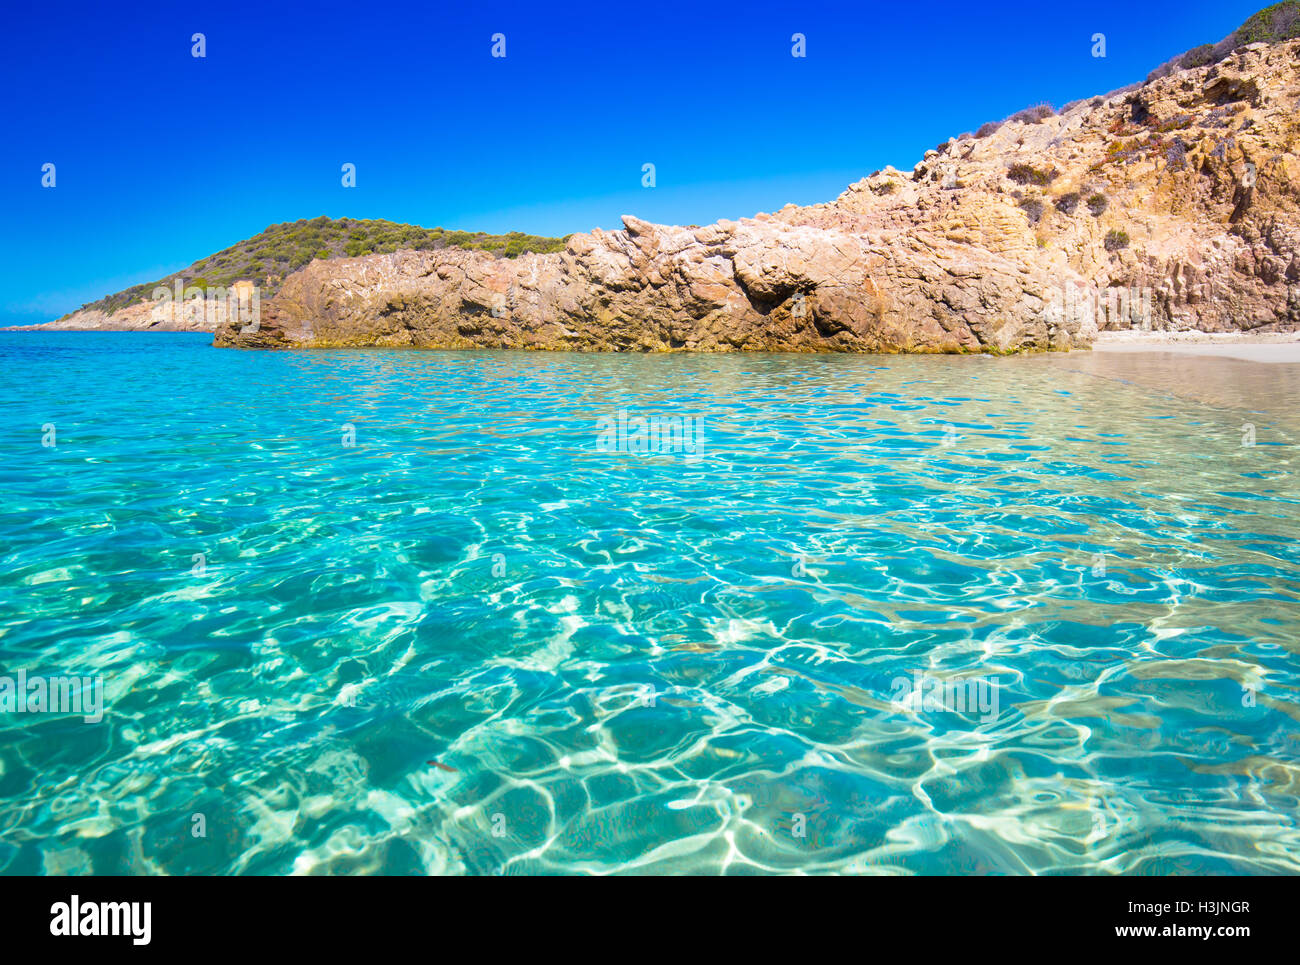 Una bellissima spiaggia di sabbia con rocce e tourquise acqua chiara vicino a Cargese Corsica, Francia, Europa. Foto Stock